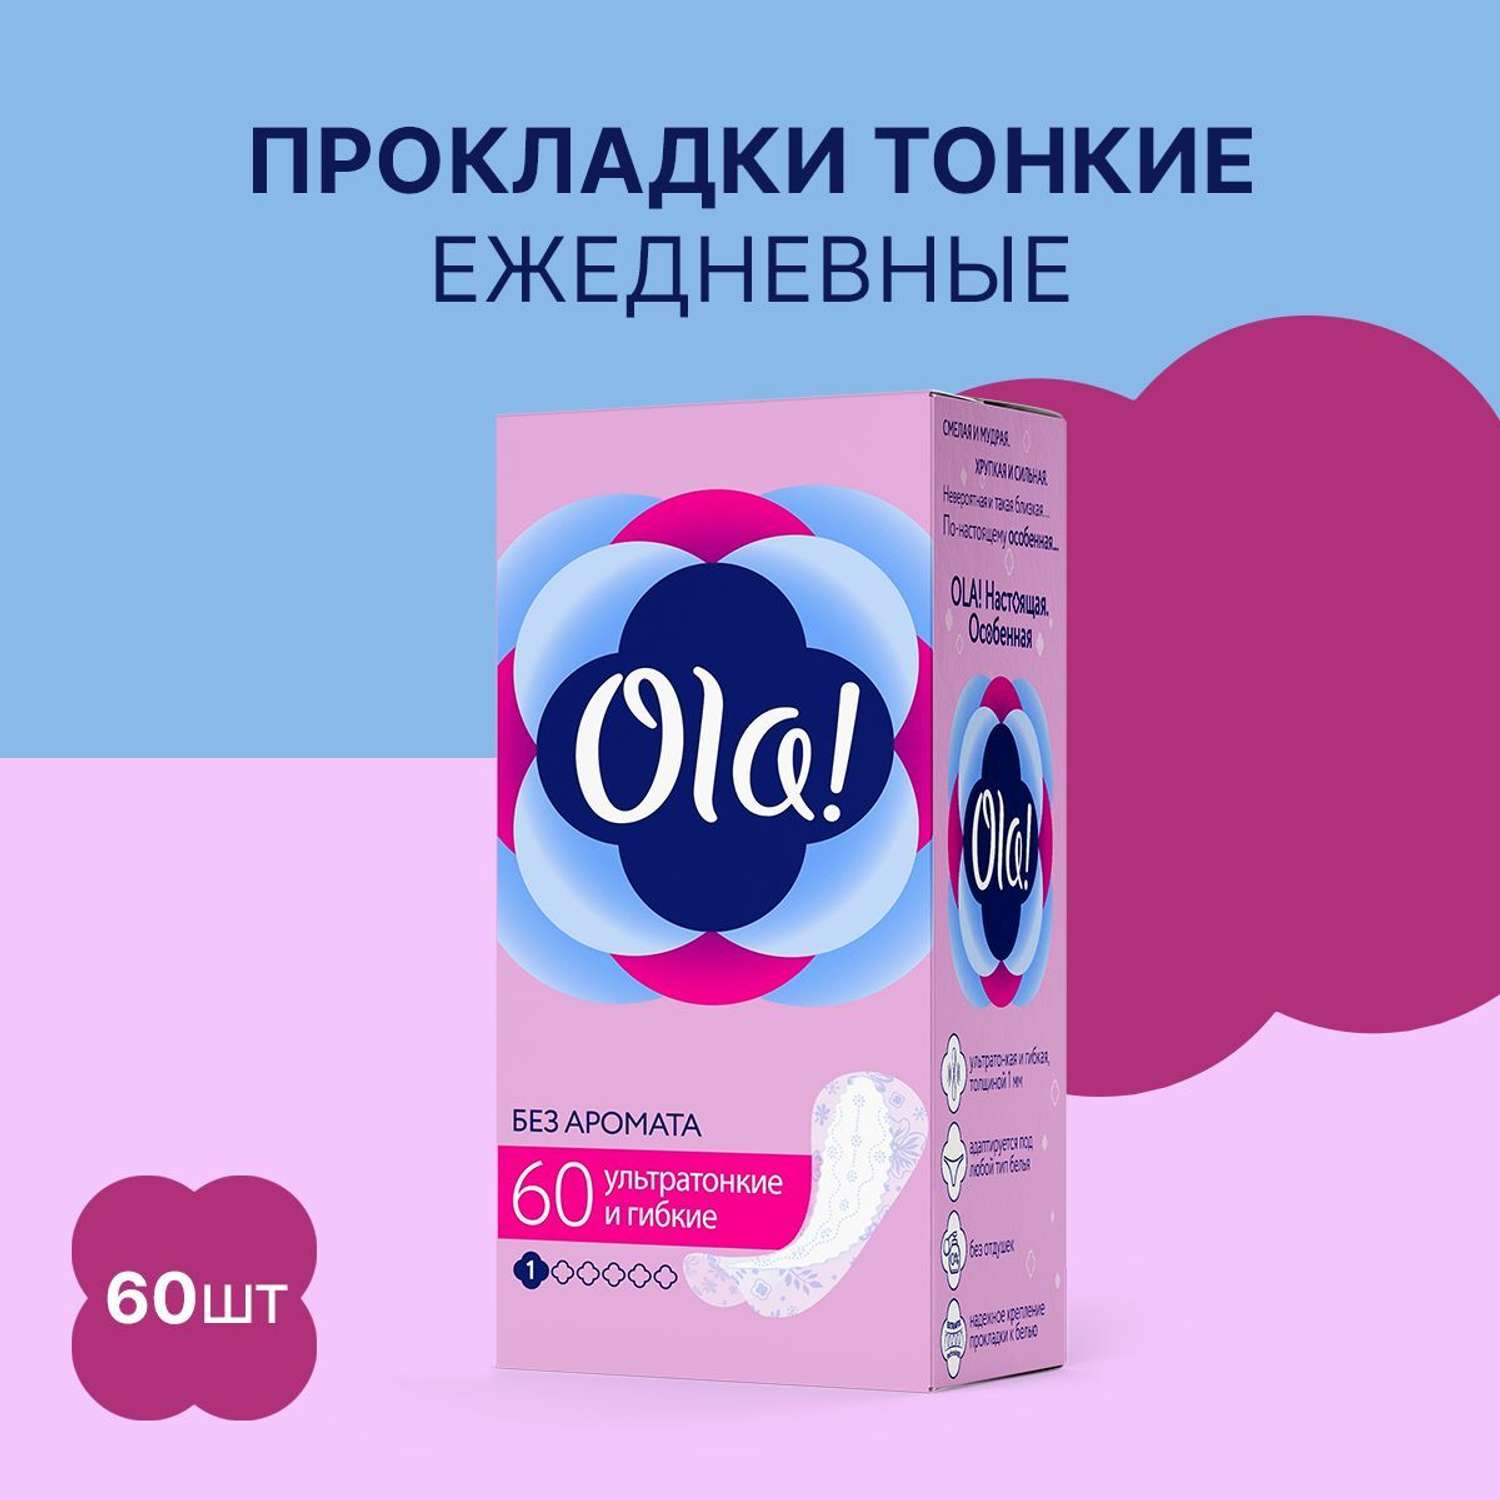 Ежедневные прокладки Ola! ультратонкие Light без аромата 60 шт - фото 1